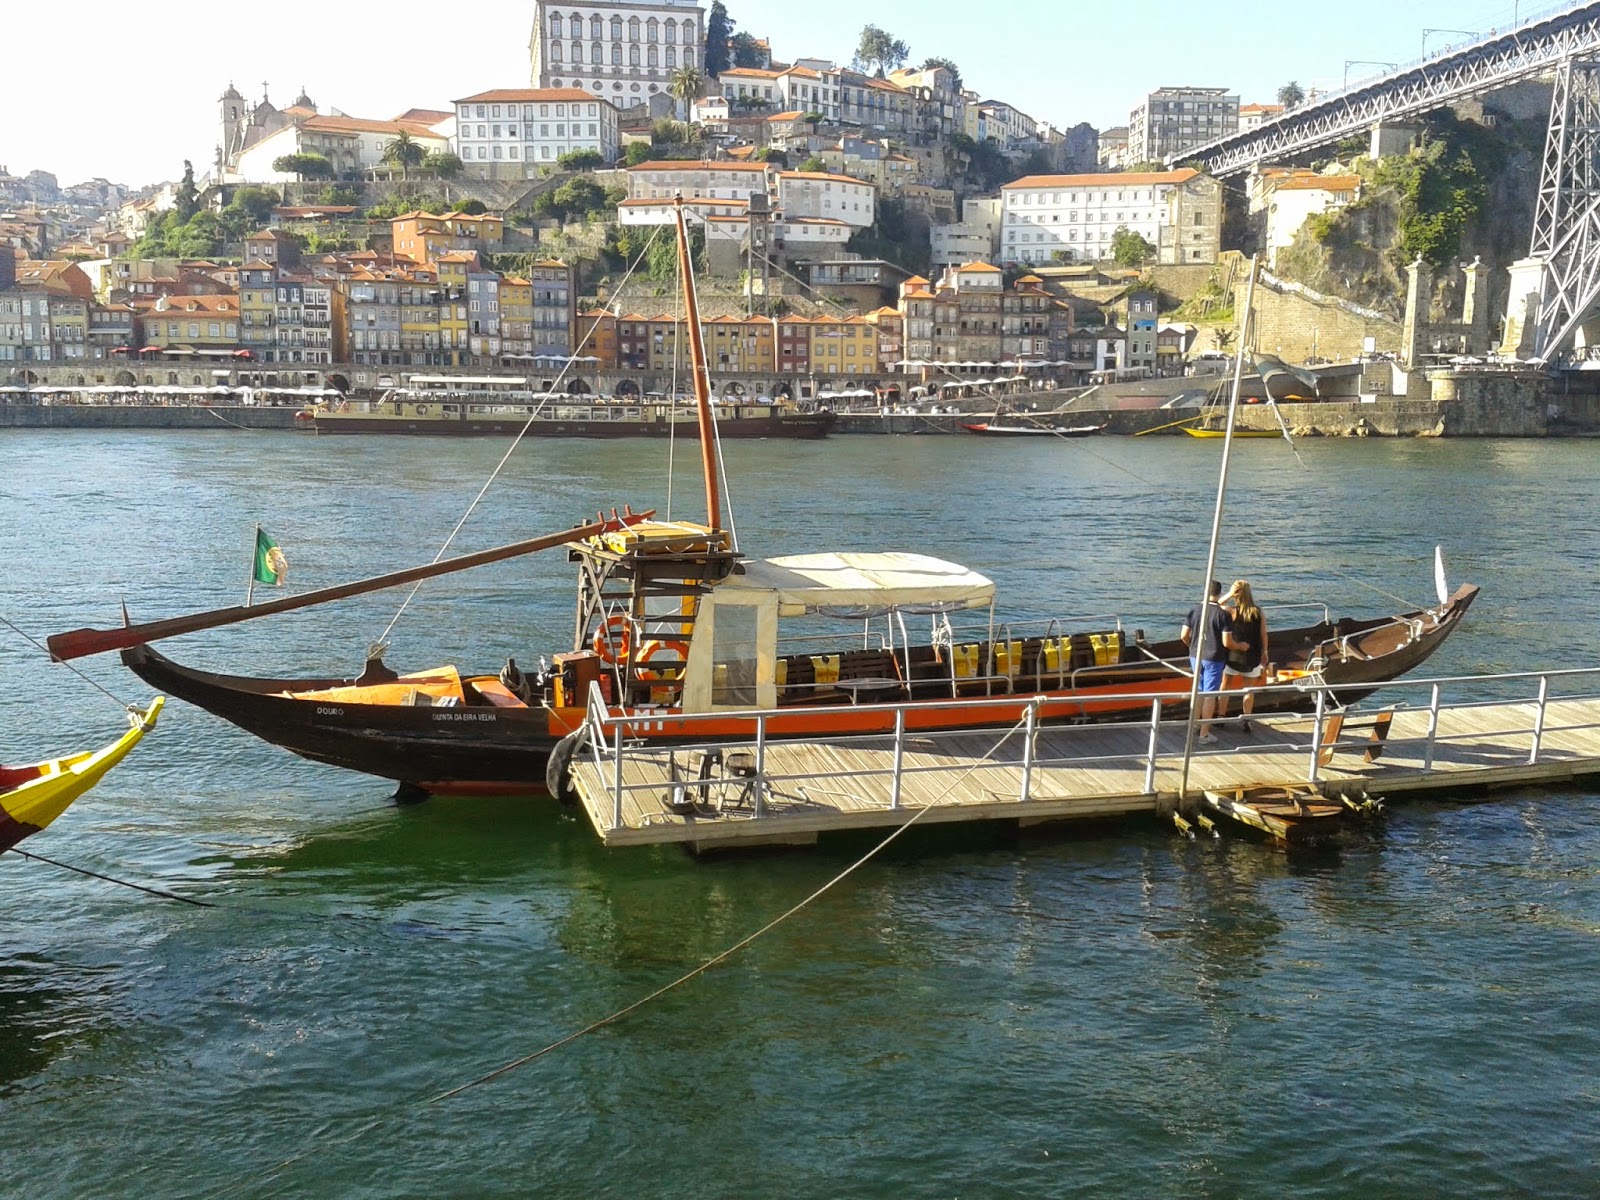 Manos do Douro - Transport company